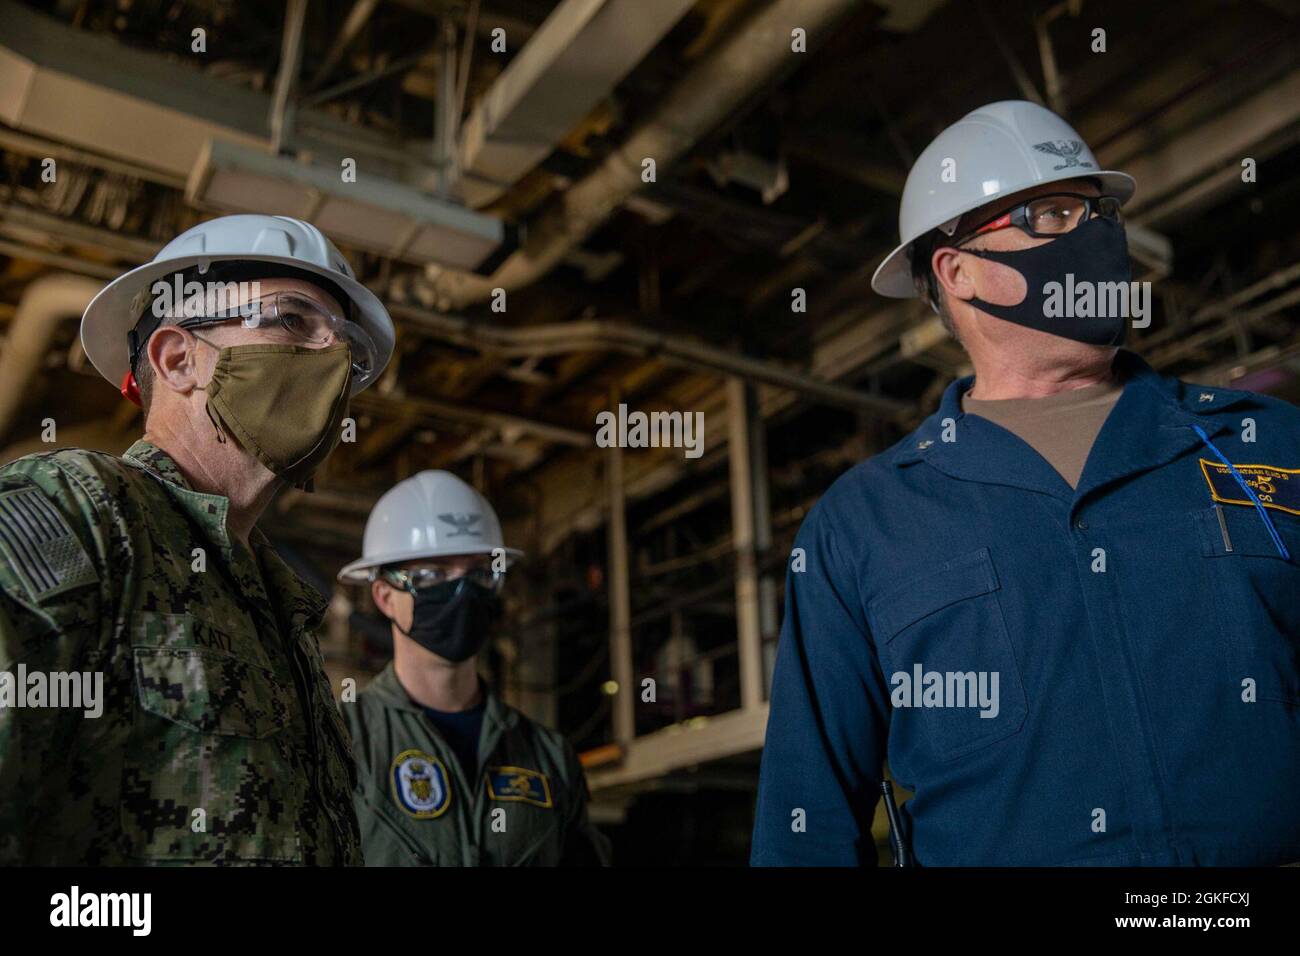 210408-N-LZ839-1069 PORTSMOUTH, VIRGINIA. (8 aprile 2021) - ADM posteriore. Robert Katz, Comandante Expeditionary Strike Group 2, il Capitano Bryan Carmichael, Comandante ufficiale della USS Bataan (LHD 5), e il Capitano Joe Murphy, Executive Officer della USS Bataan (LHD 5), visitano la nave l'8 aprile 2021. Bataan è in porto presso il cantiere navale General Dynamics NASSCO per una disponibilità di manutenzione. Foto Stock